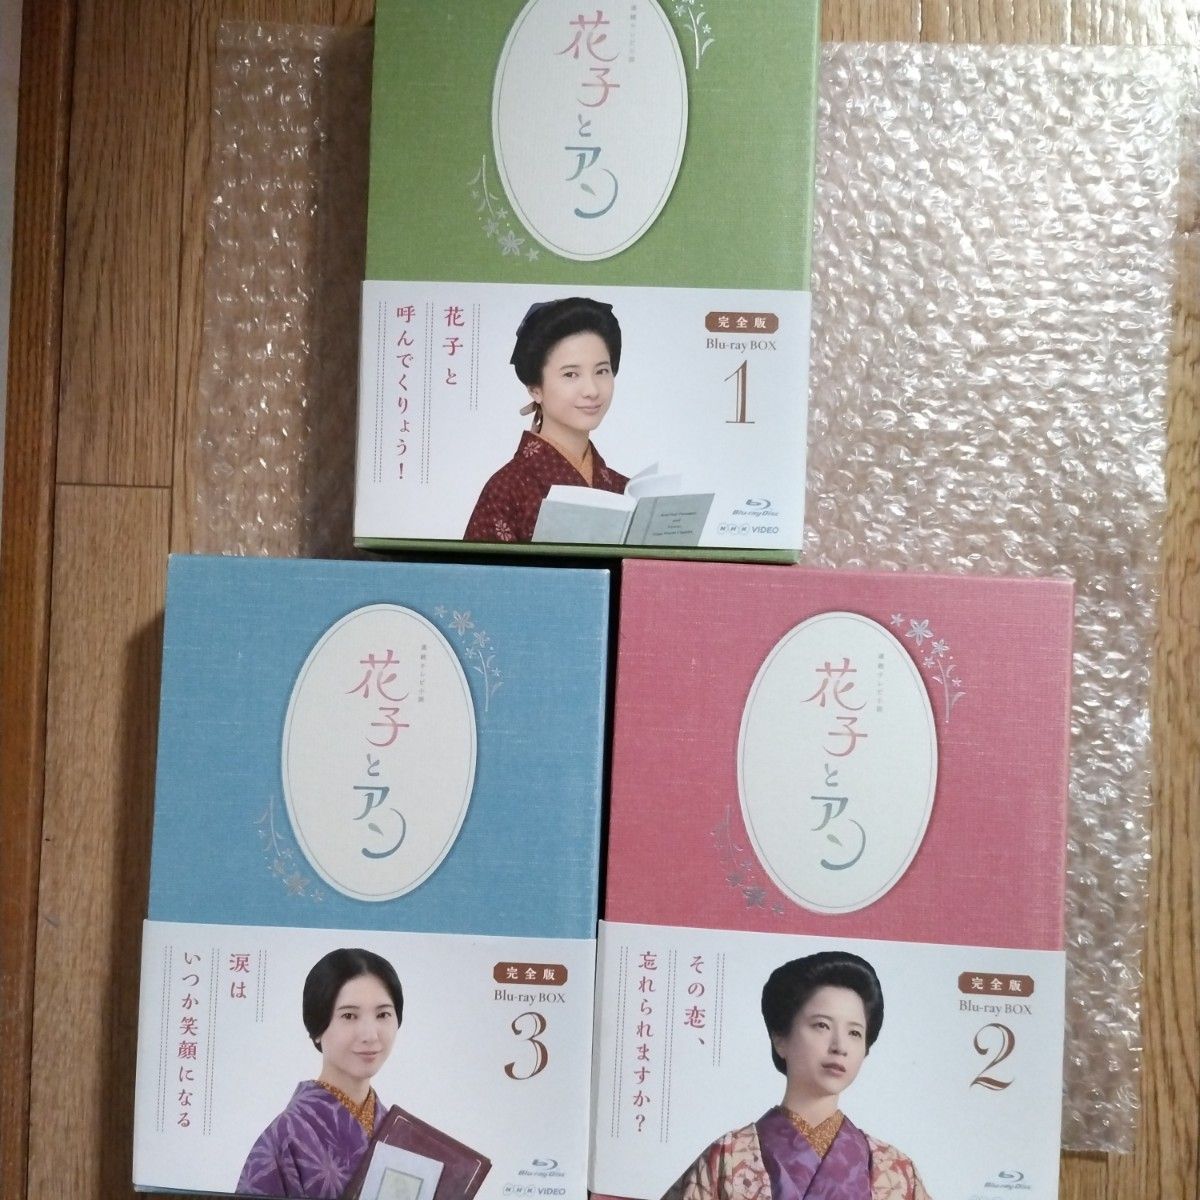 連続テレビ小説 「花子とアン」 完全版 Blu-ray-BOX -1~3